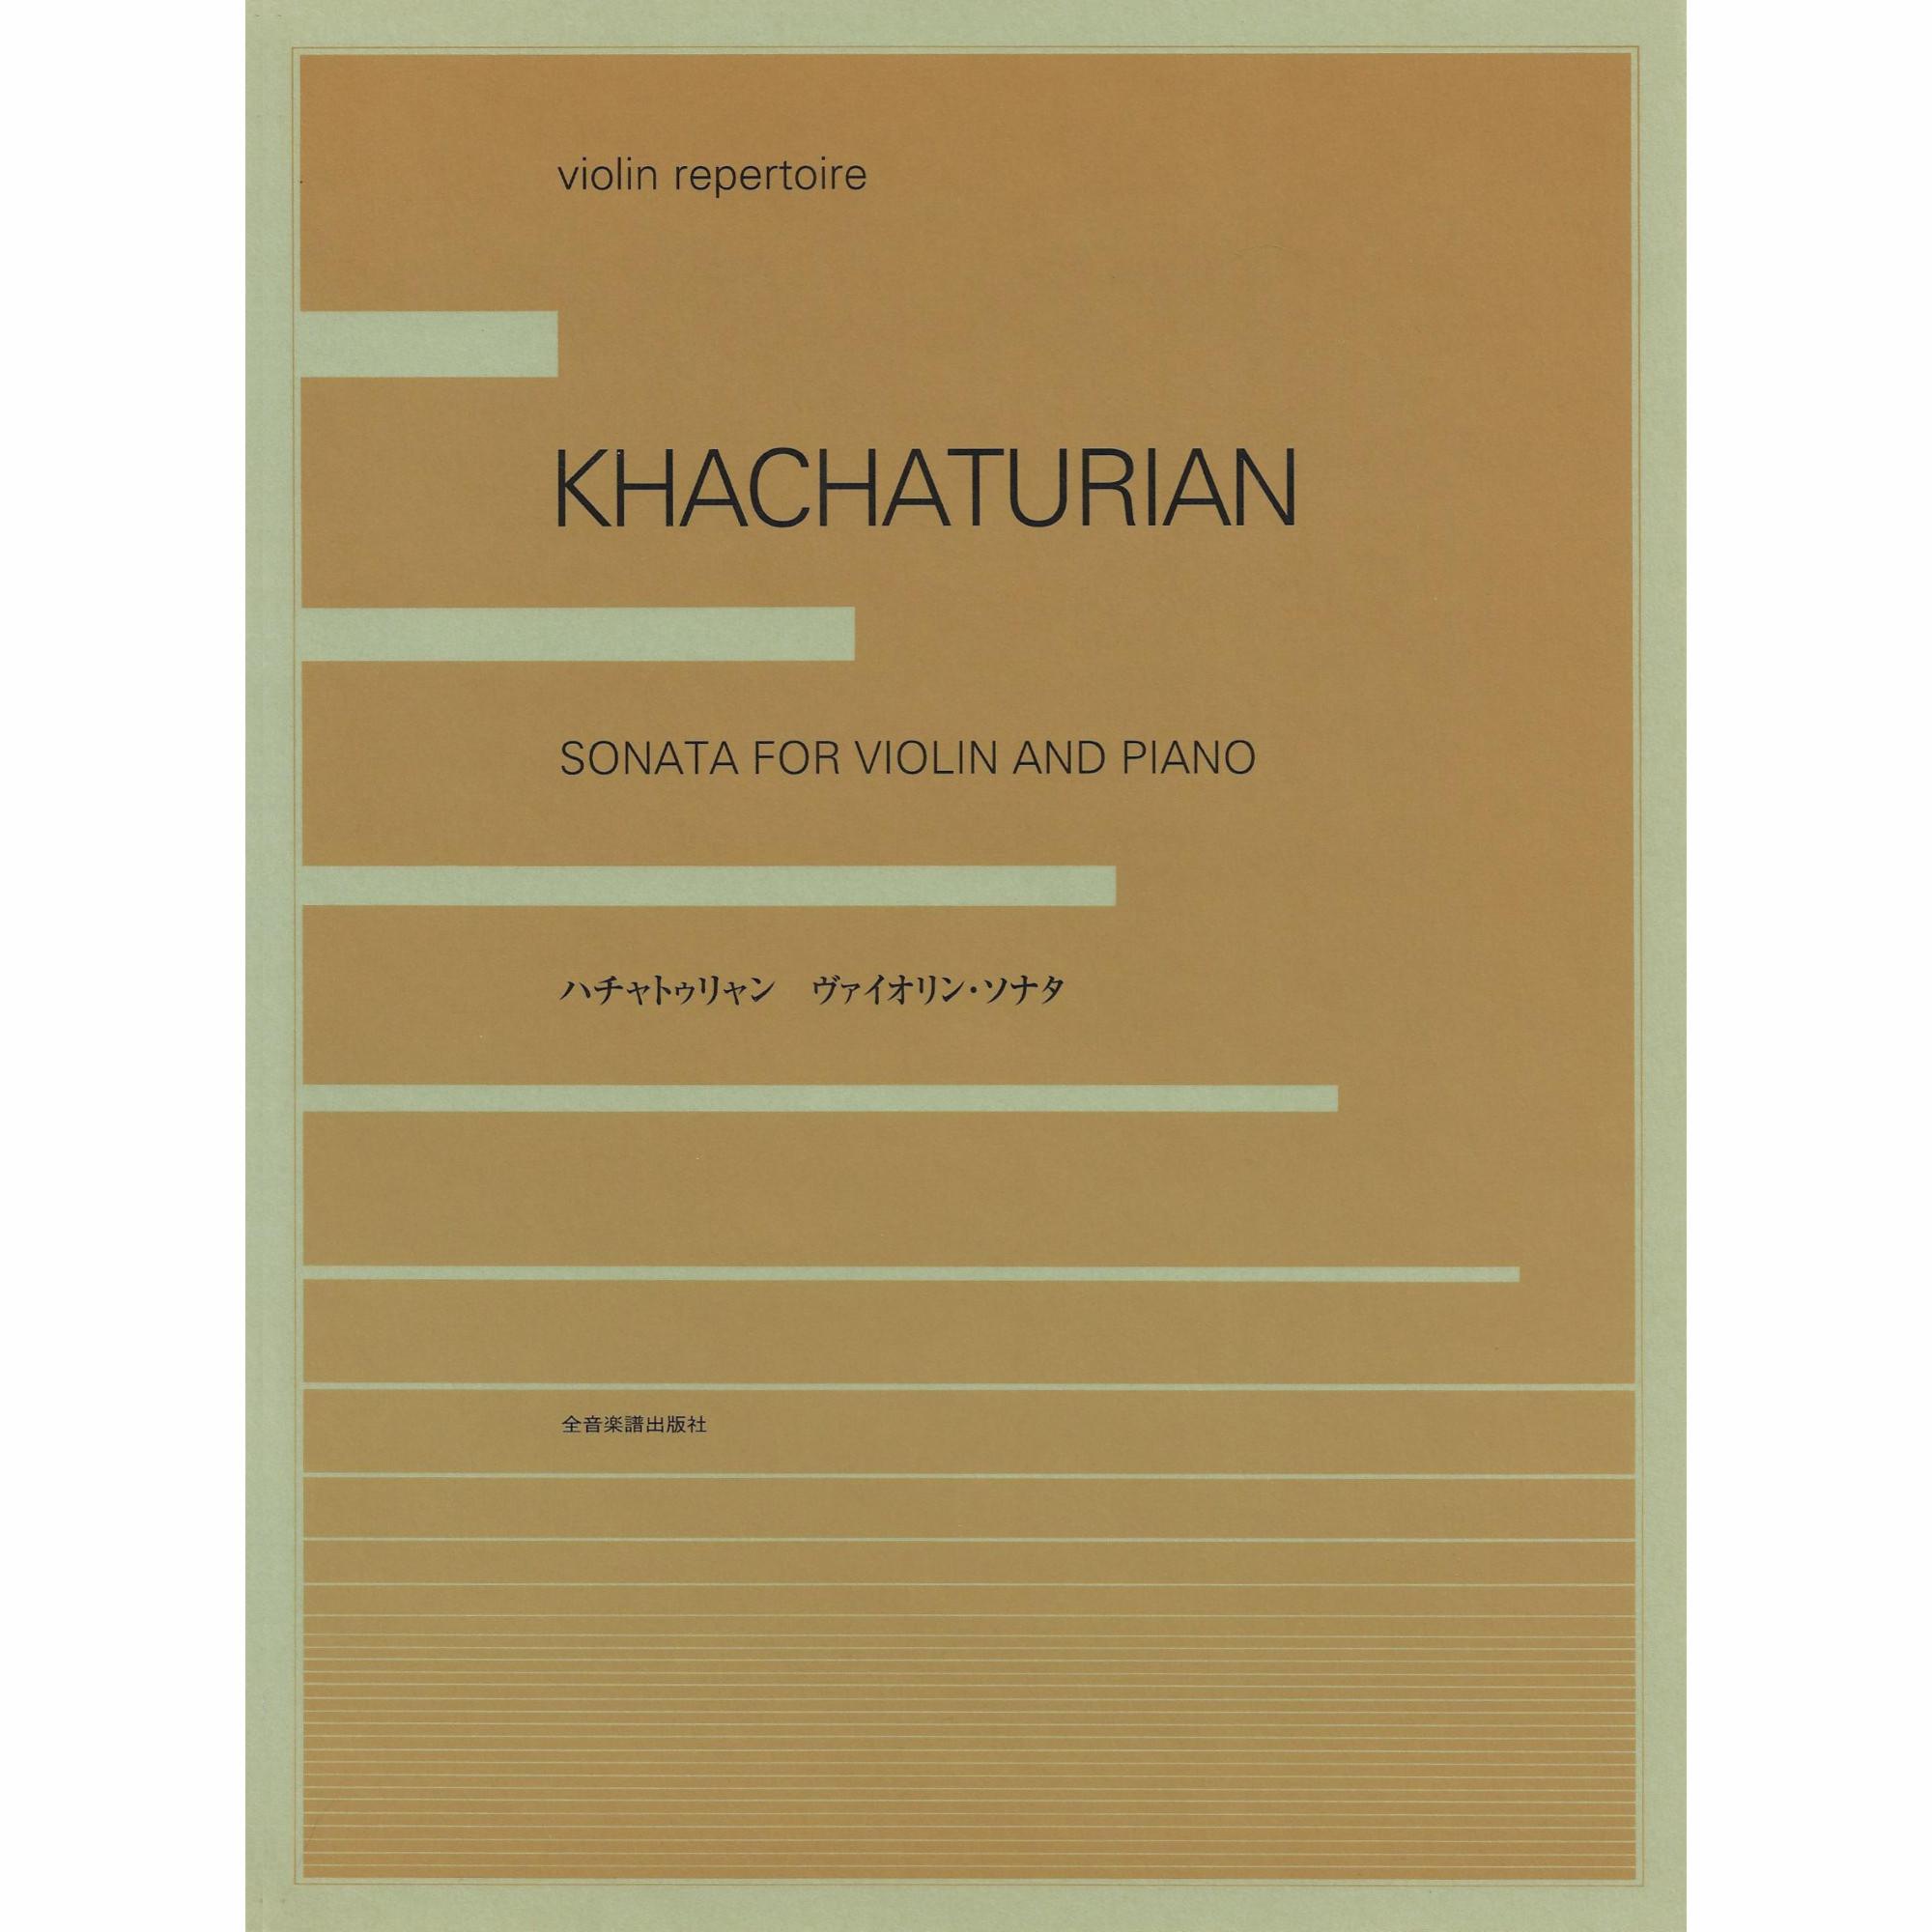 Khachaturian -- Sonata for Violin and Piano